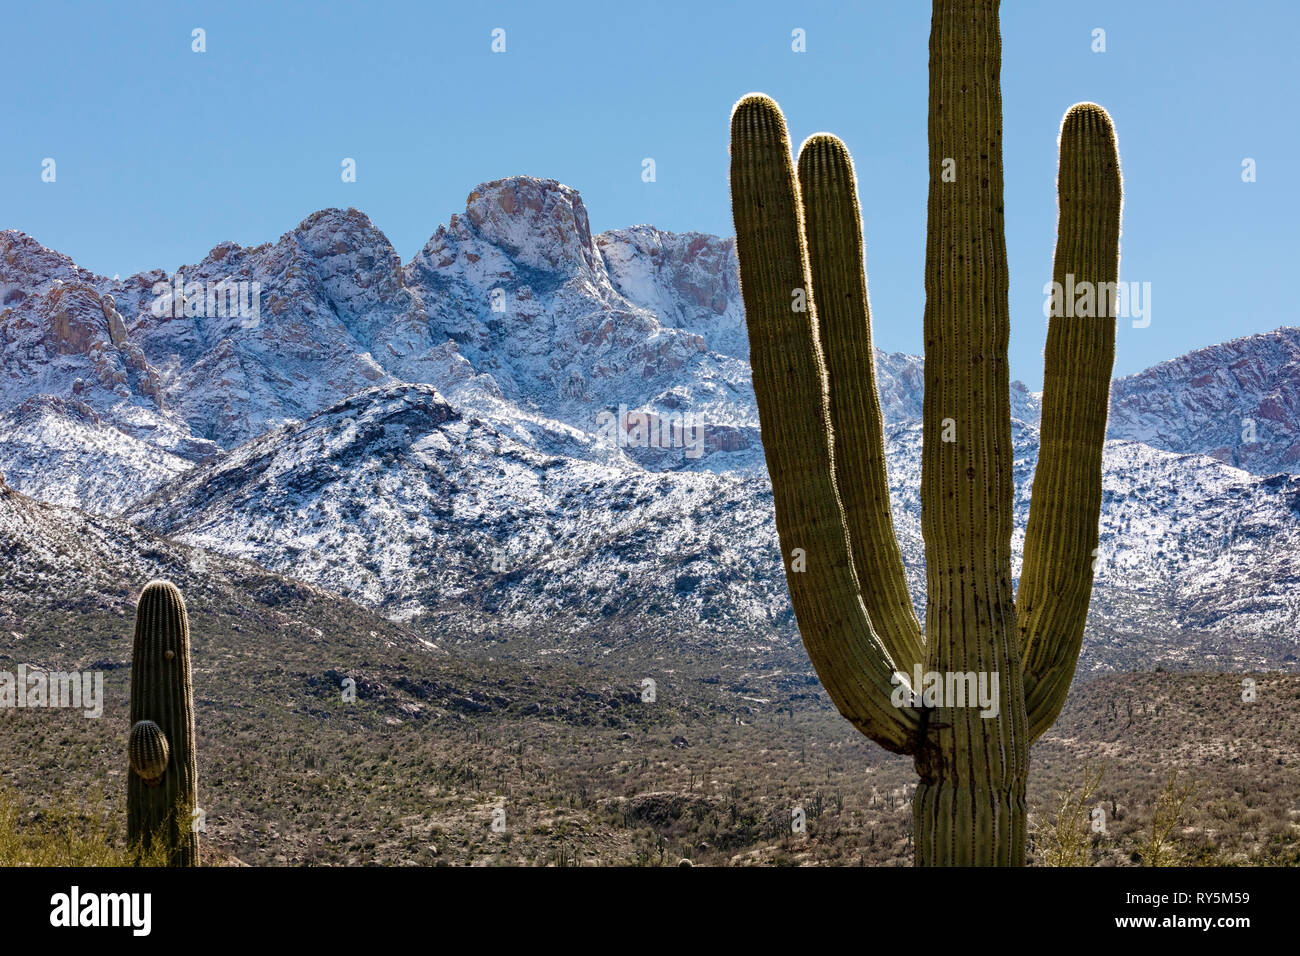 Schneefall auf Pusch Ridge, Catalina State Park, Tucson, Arizona, gigantischen Saguaro Kaktus (Carnegiea gigantea) im Vordergrund. Stockfoto